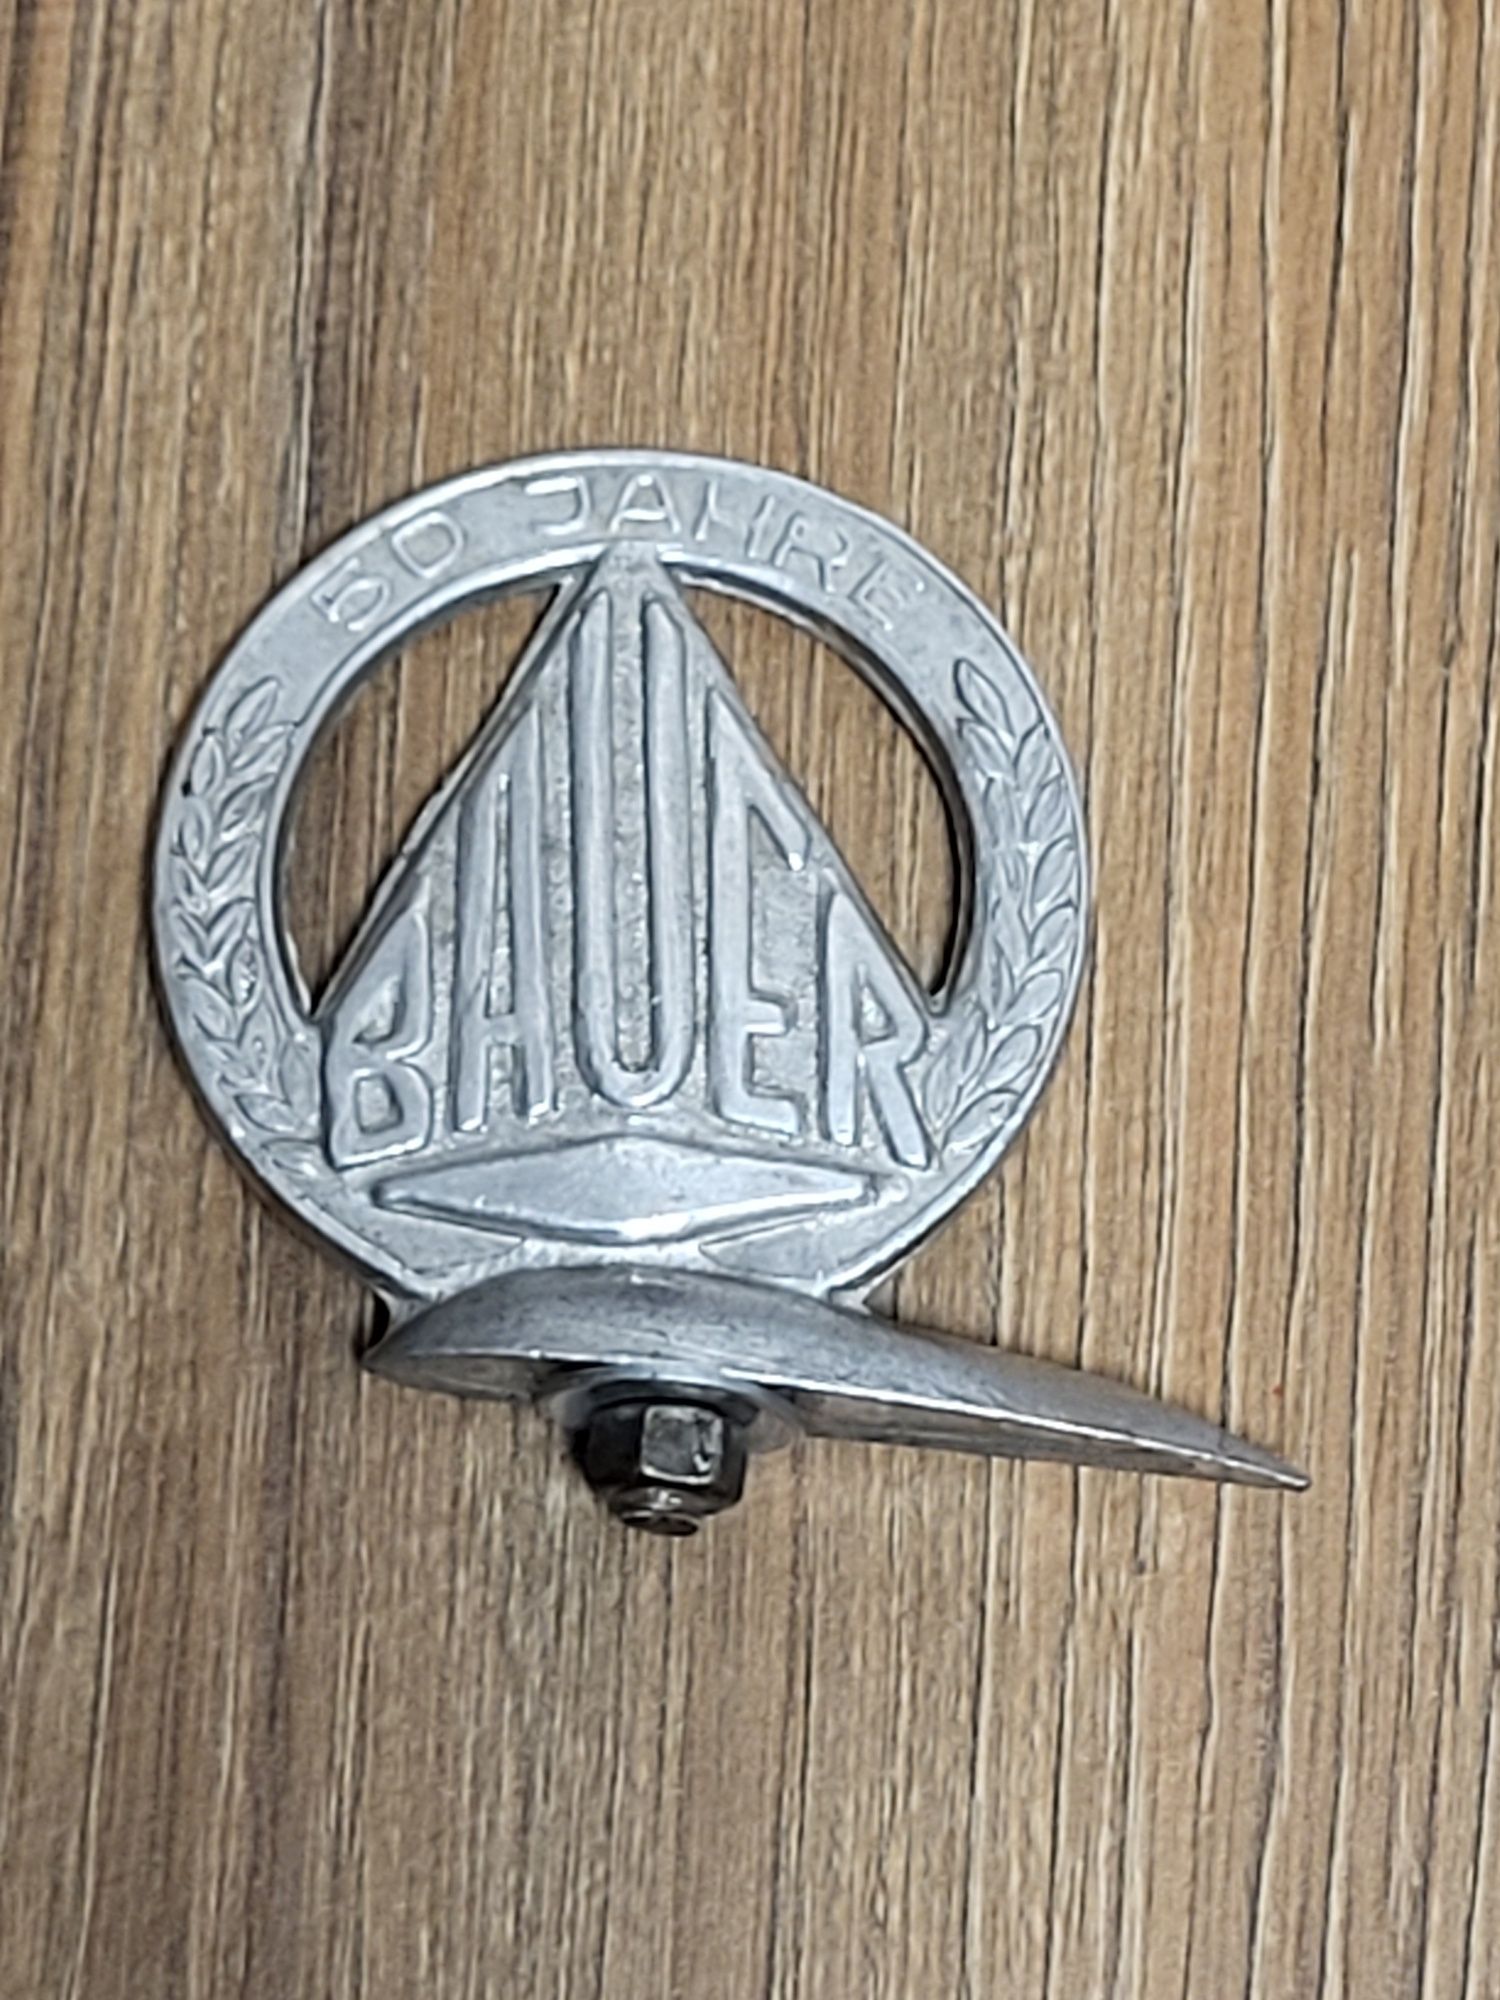 Znaczek emblemat szyld rowerowy Bauer